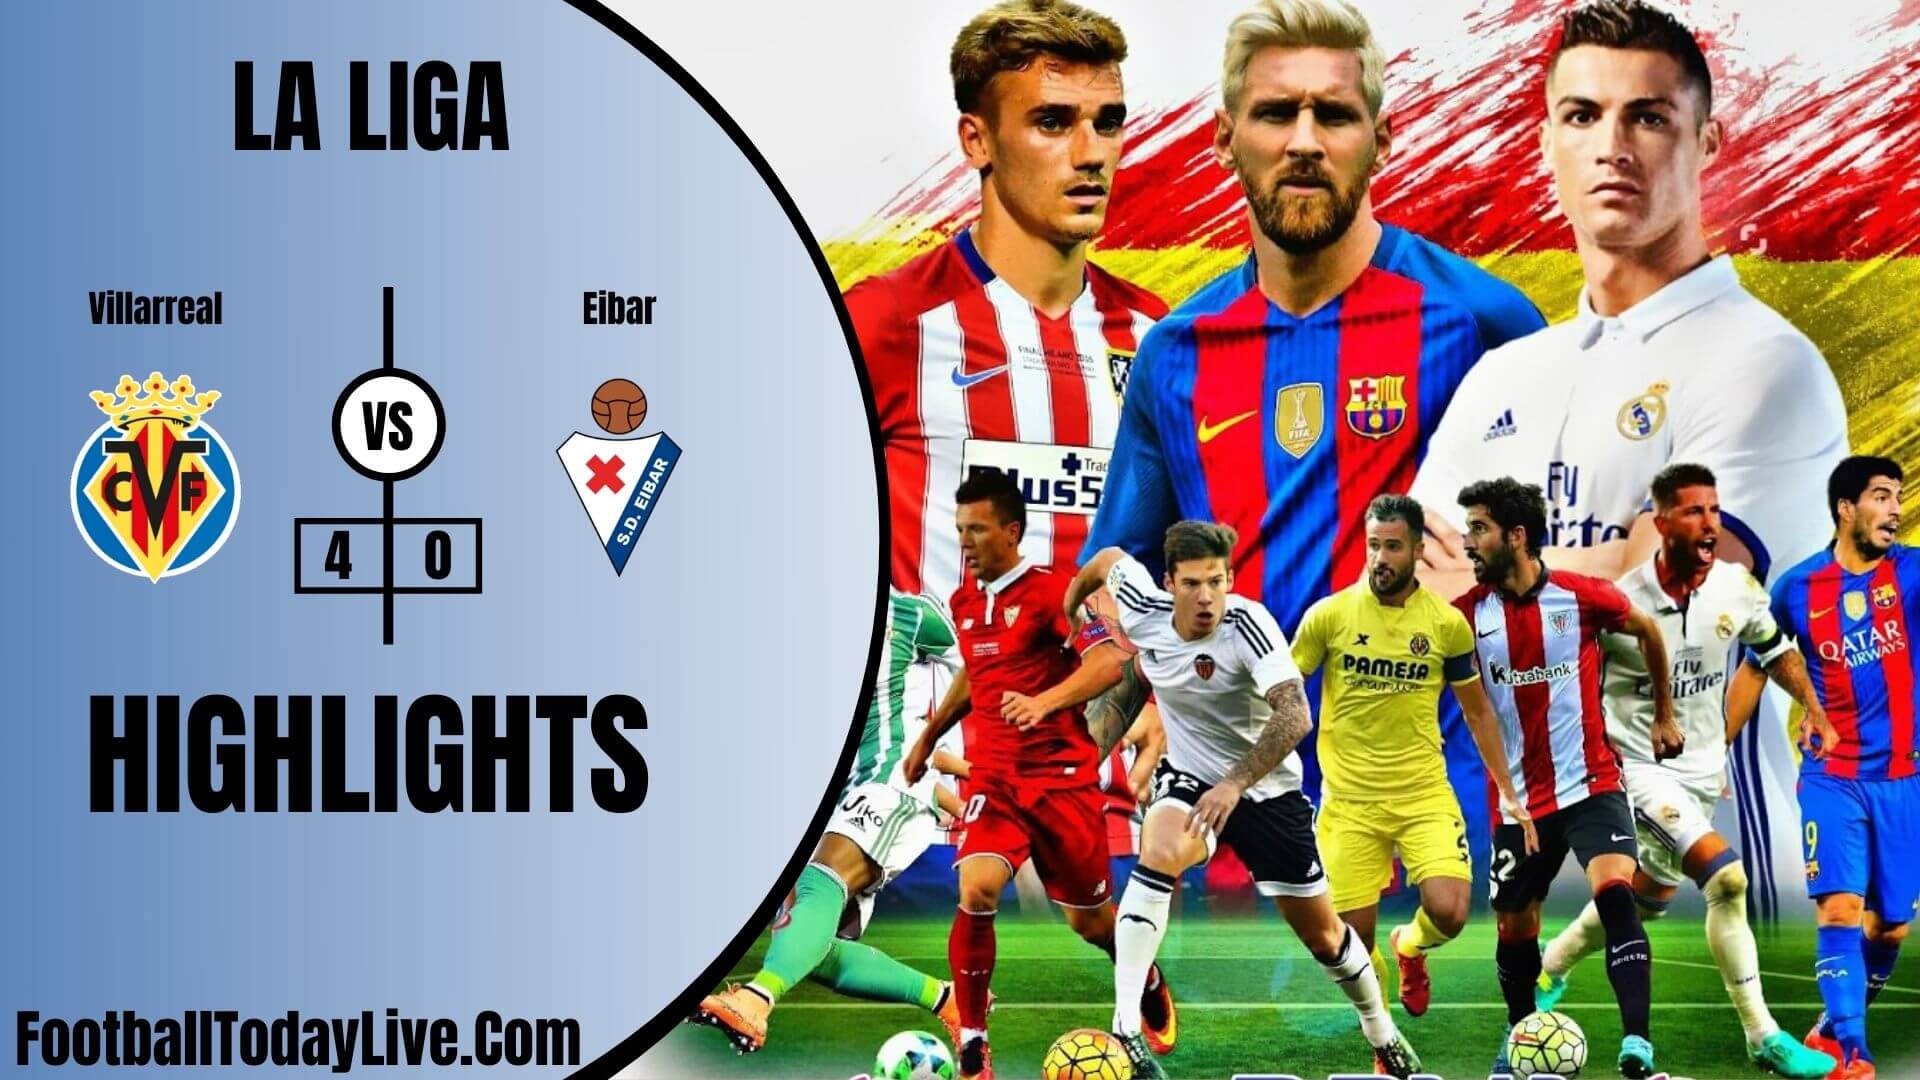 Villarreal Vs Eibar Highlights 2020 La Liga Week 38